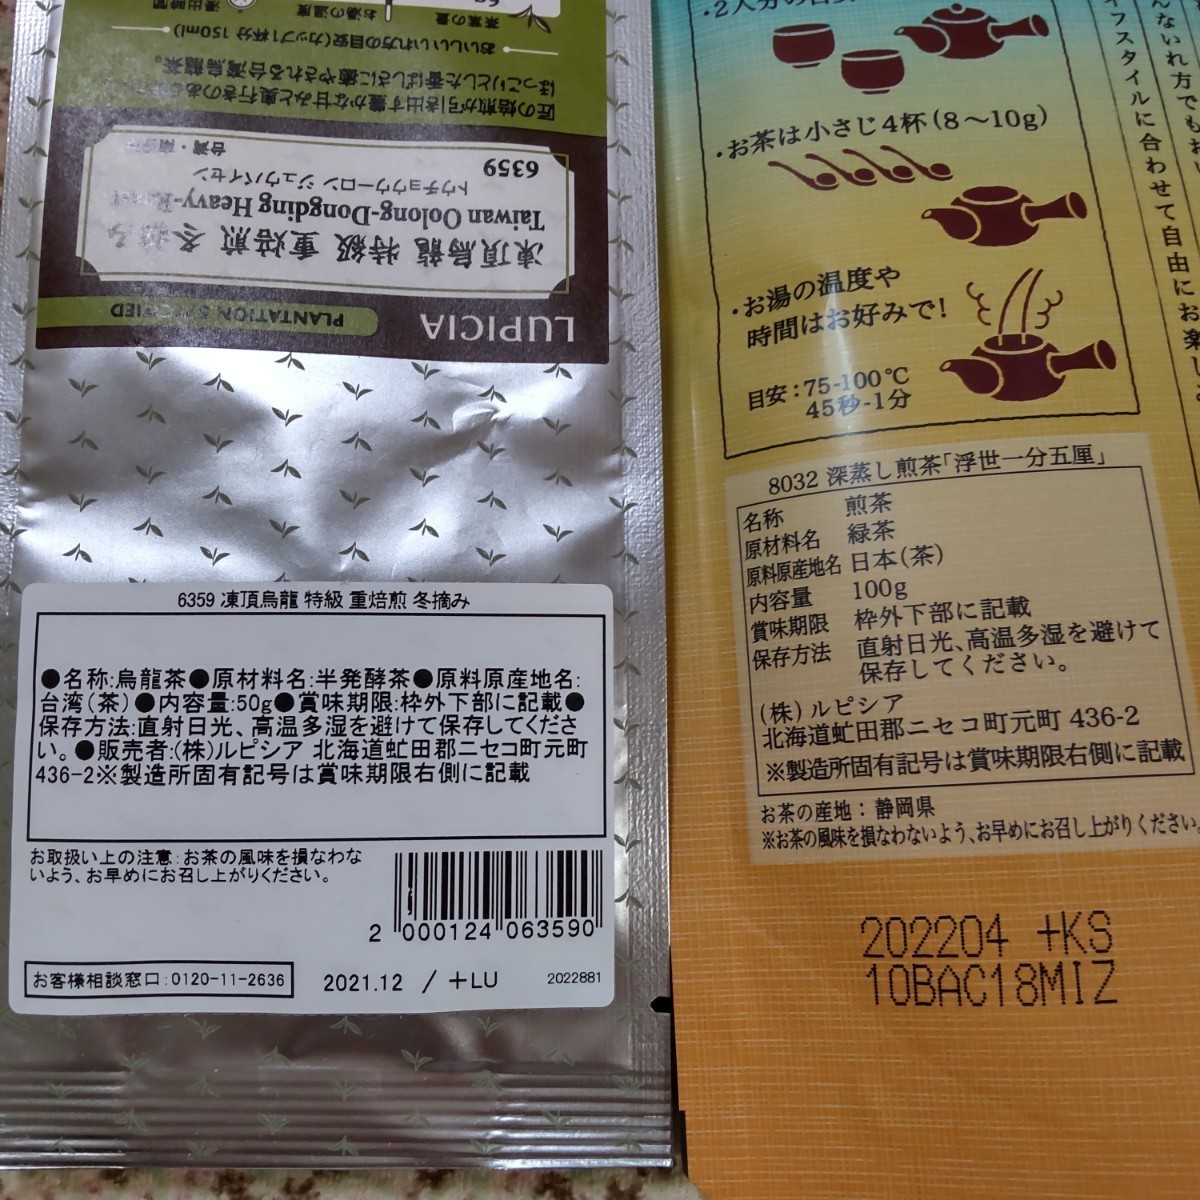 【ルピシア LUPICIA】 日本茶&中国茶セット